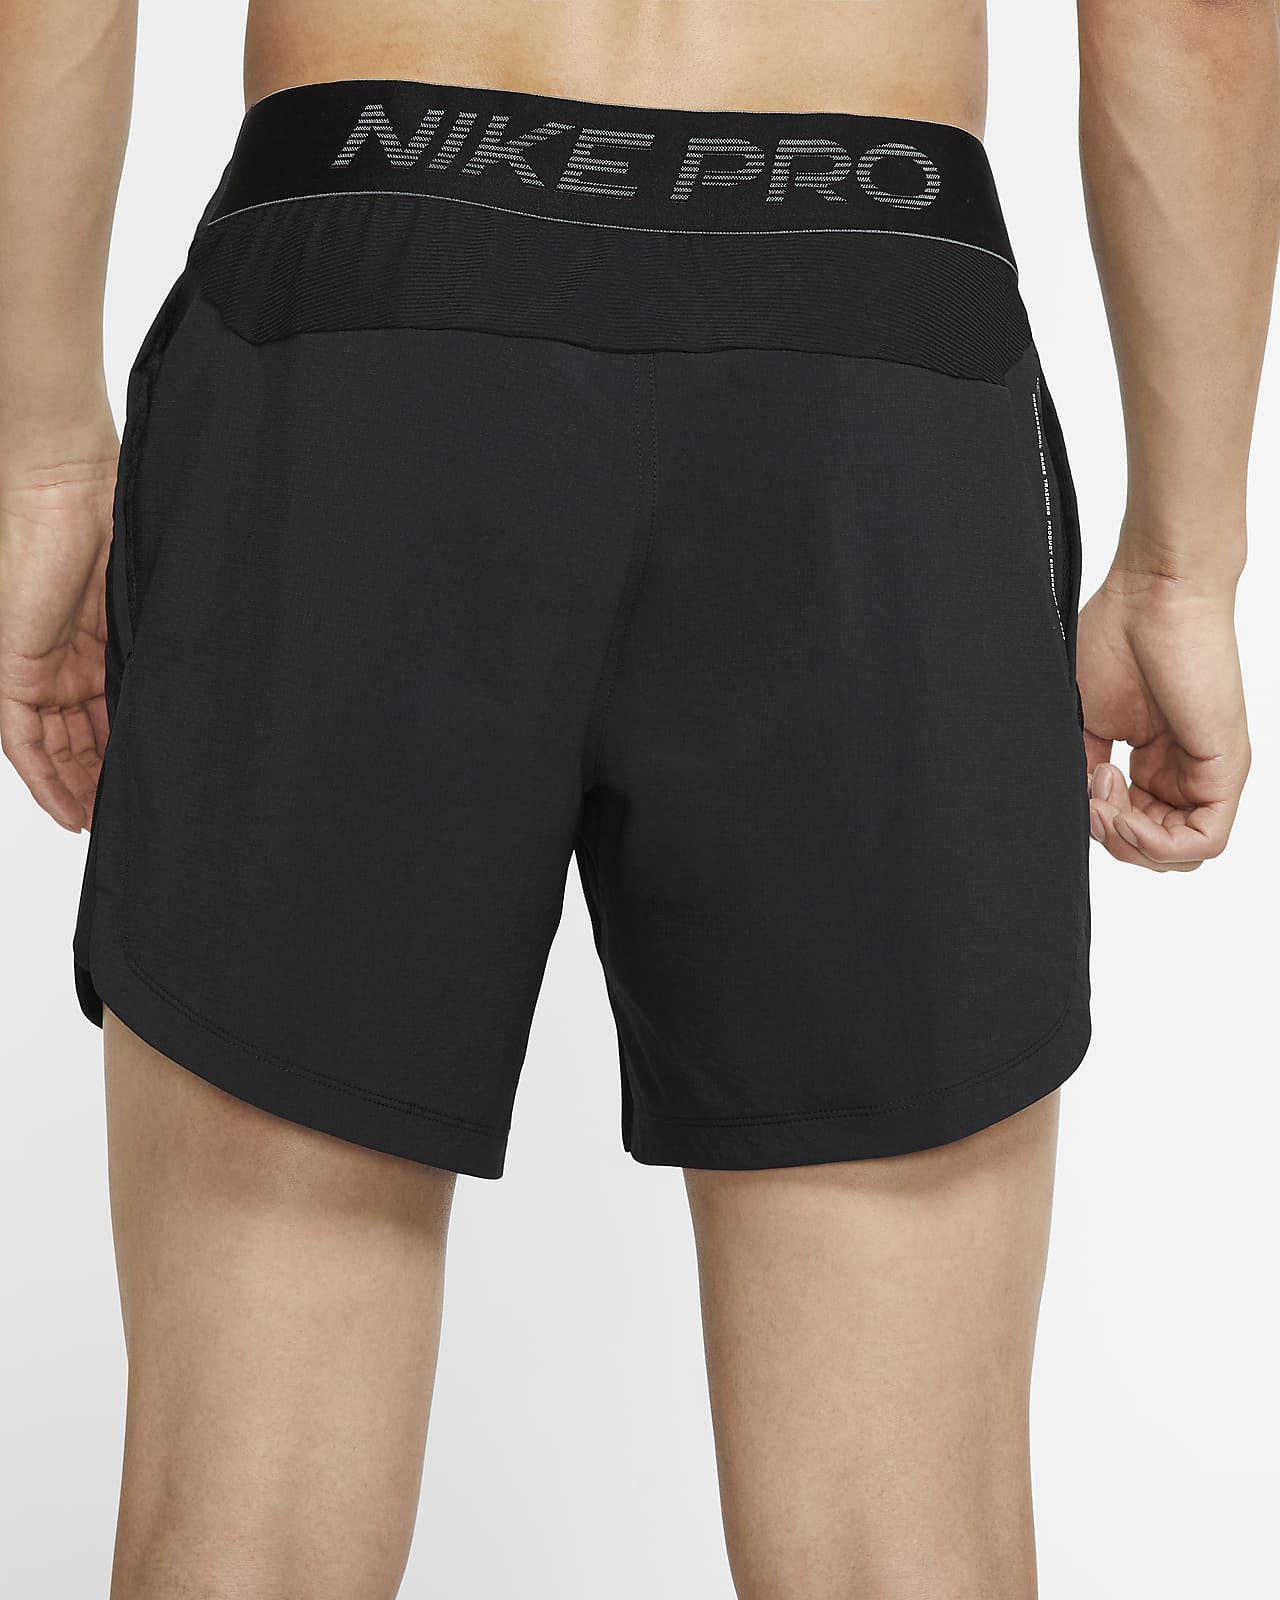 Nike Pro Men's Shorts. Nike AU